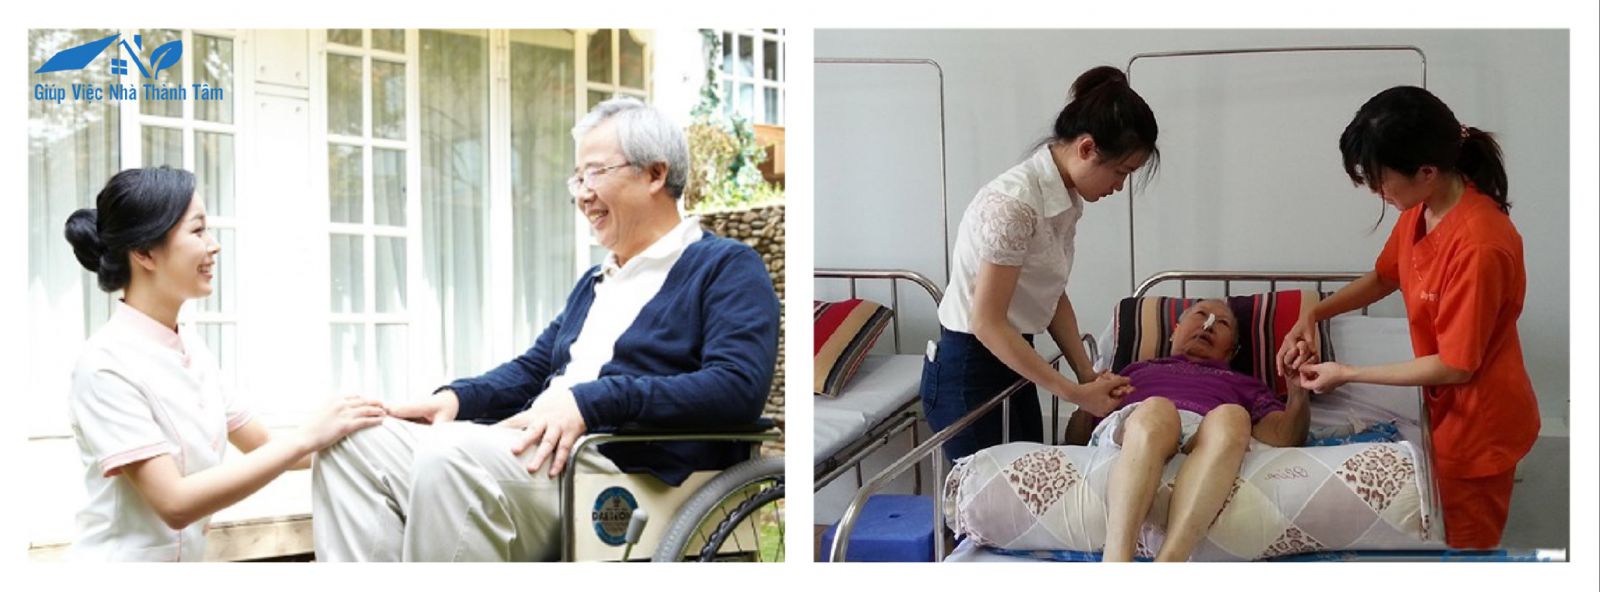 Dịch vụ chăm sóc người già, người bệnh tại huyện Bình Chánh